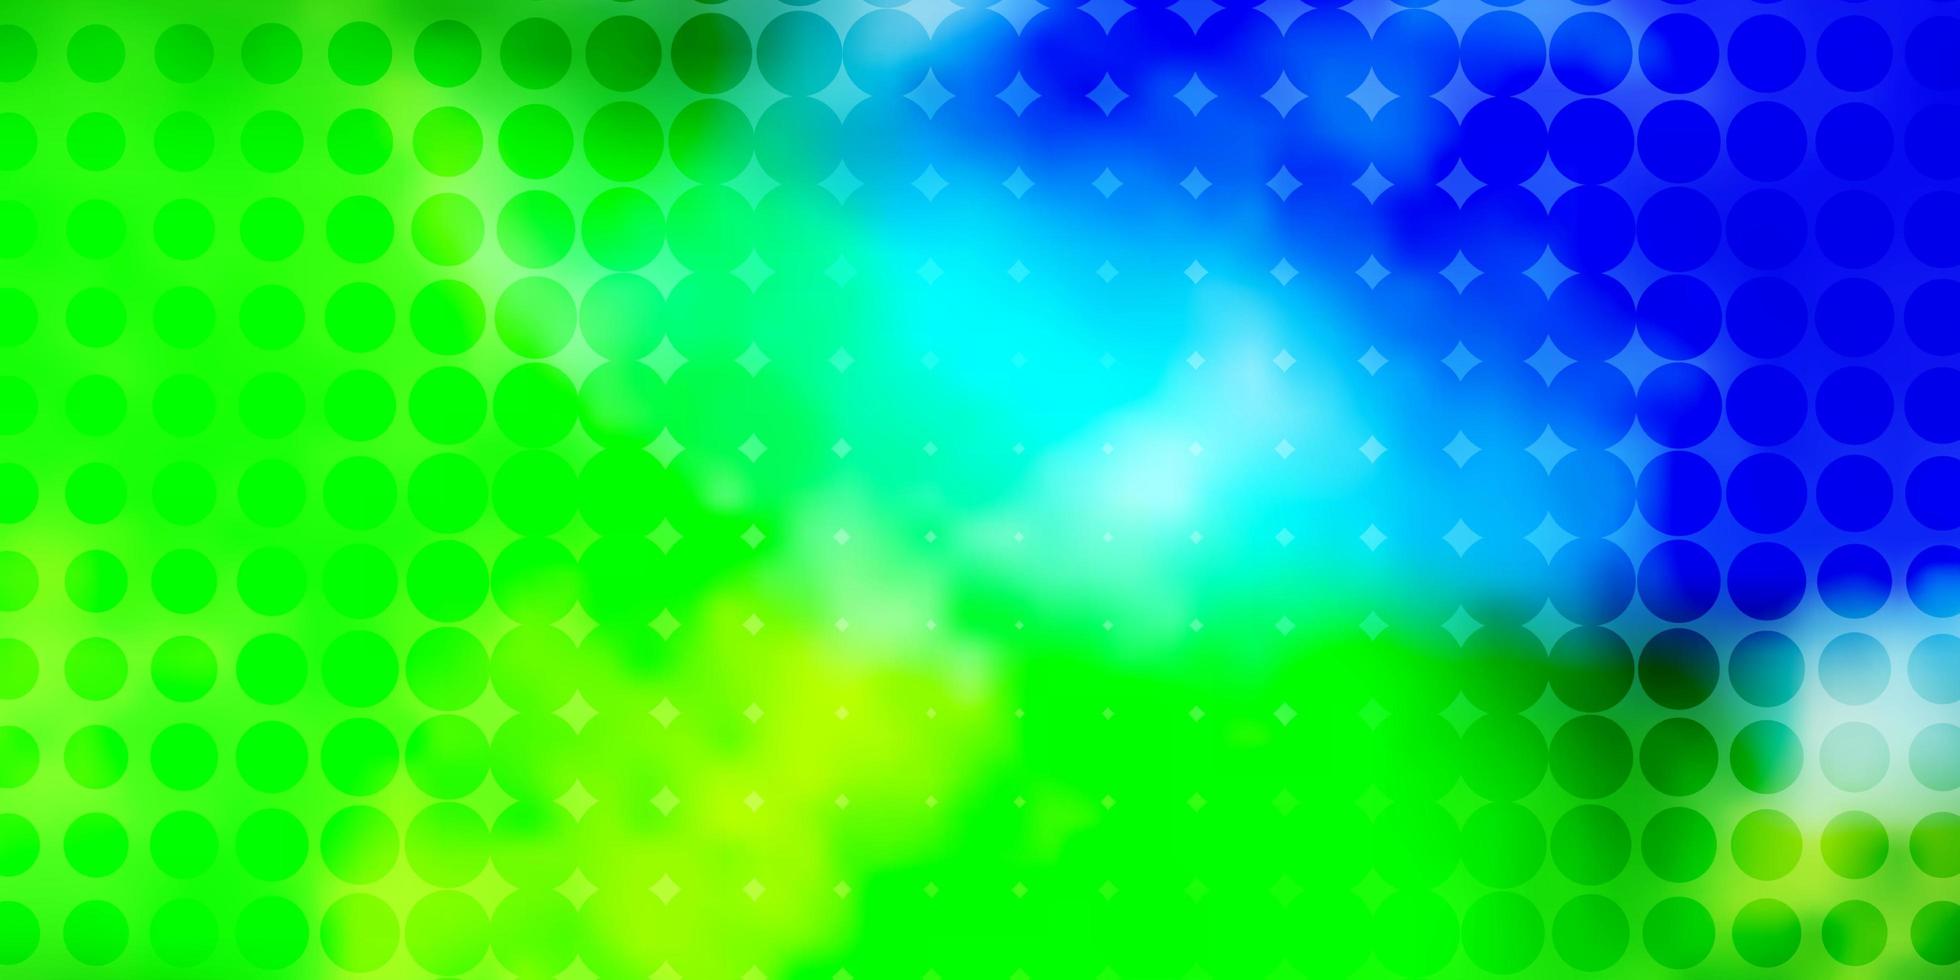 motif vectoriel vert bleu clair avec illustration de sphères avec ensemble de motif de sphères abstraites colorées brillantes pour sites Web